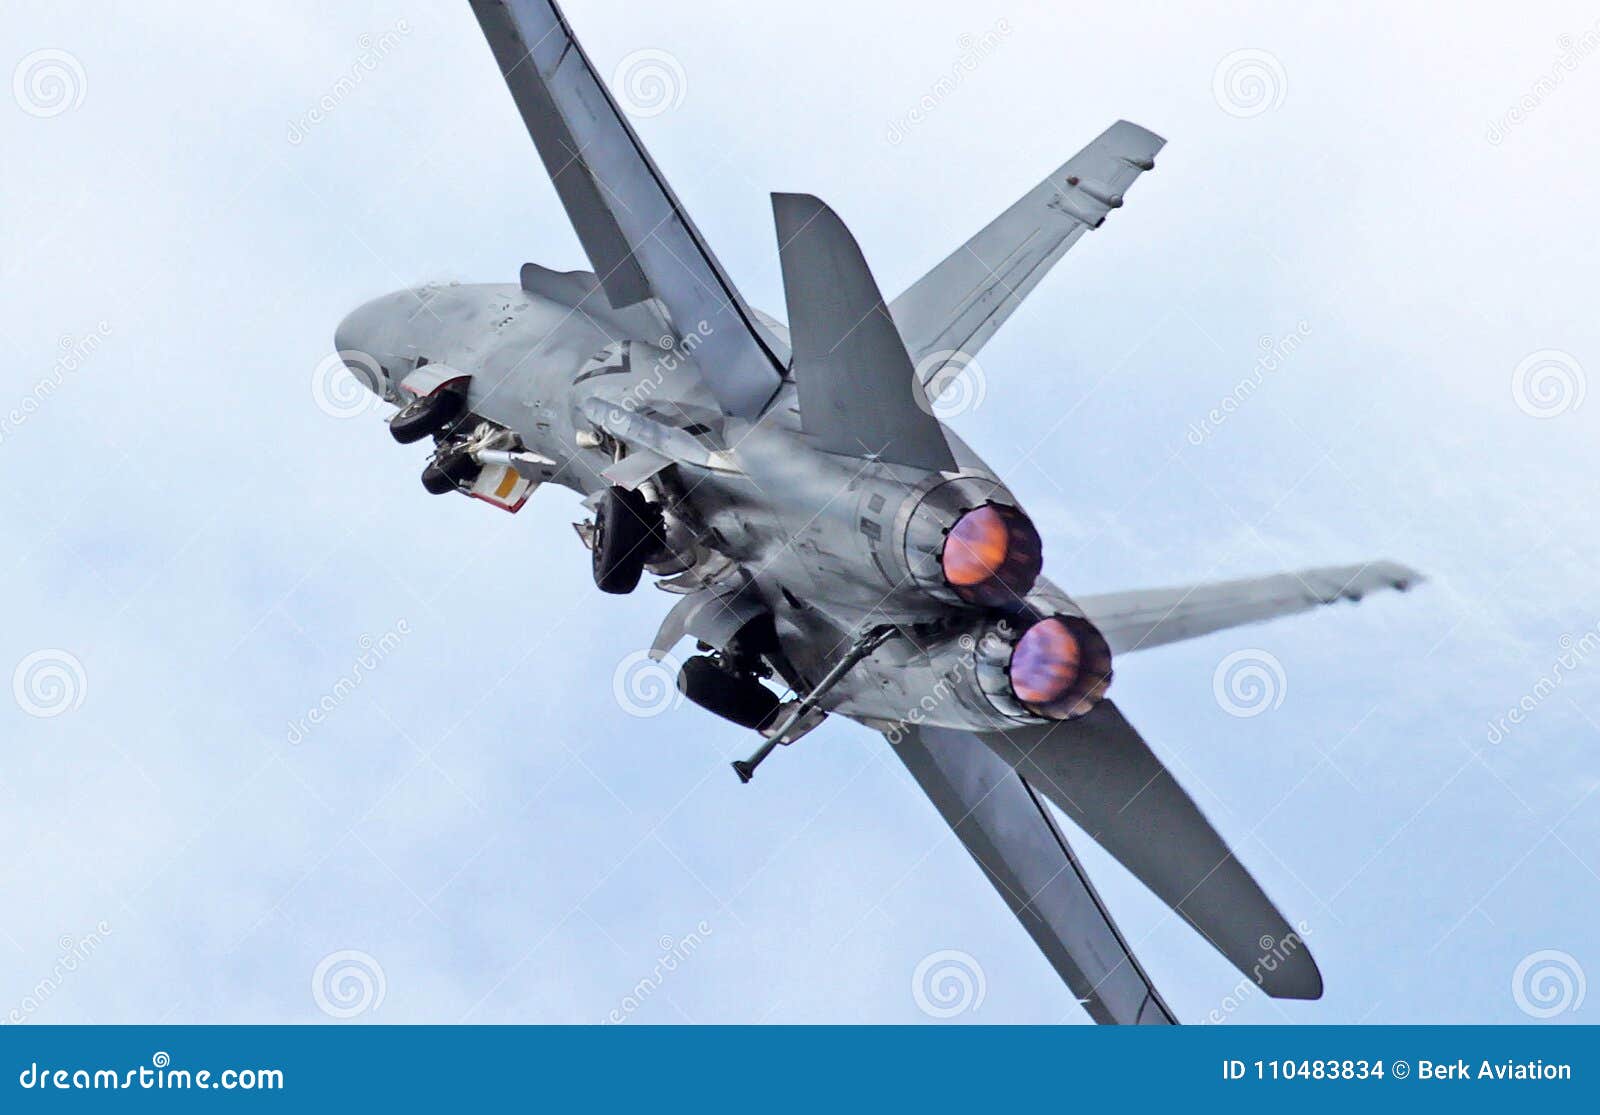 spectacular f-18 hornet full afterburner takeoff